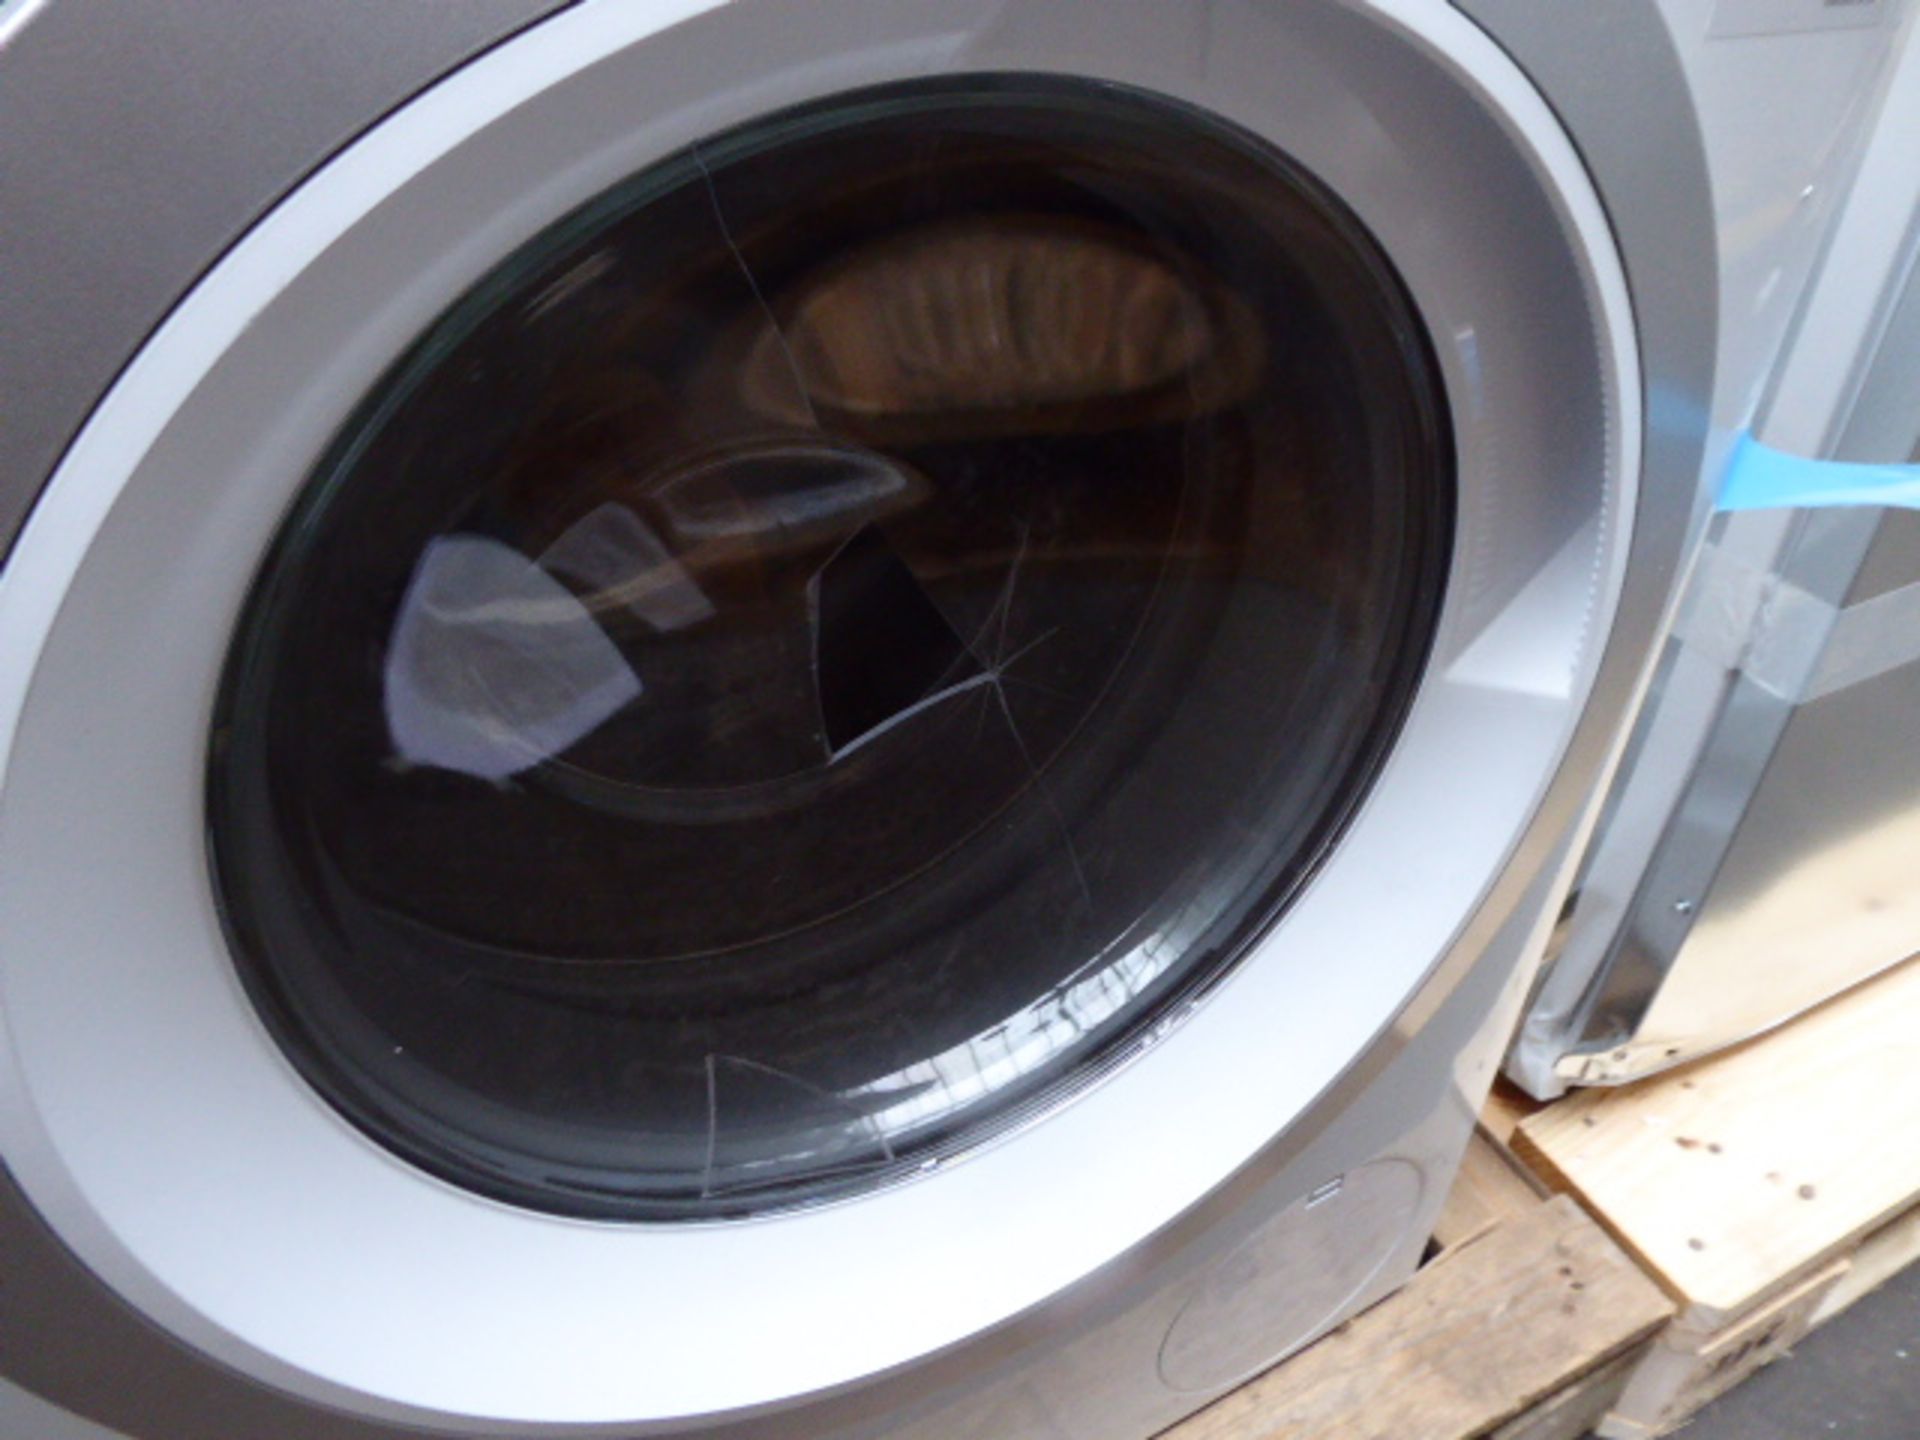 WAU28PH9GBB Bosch Washing machine - Image 2 of 3